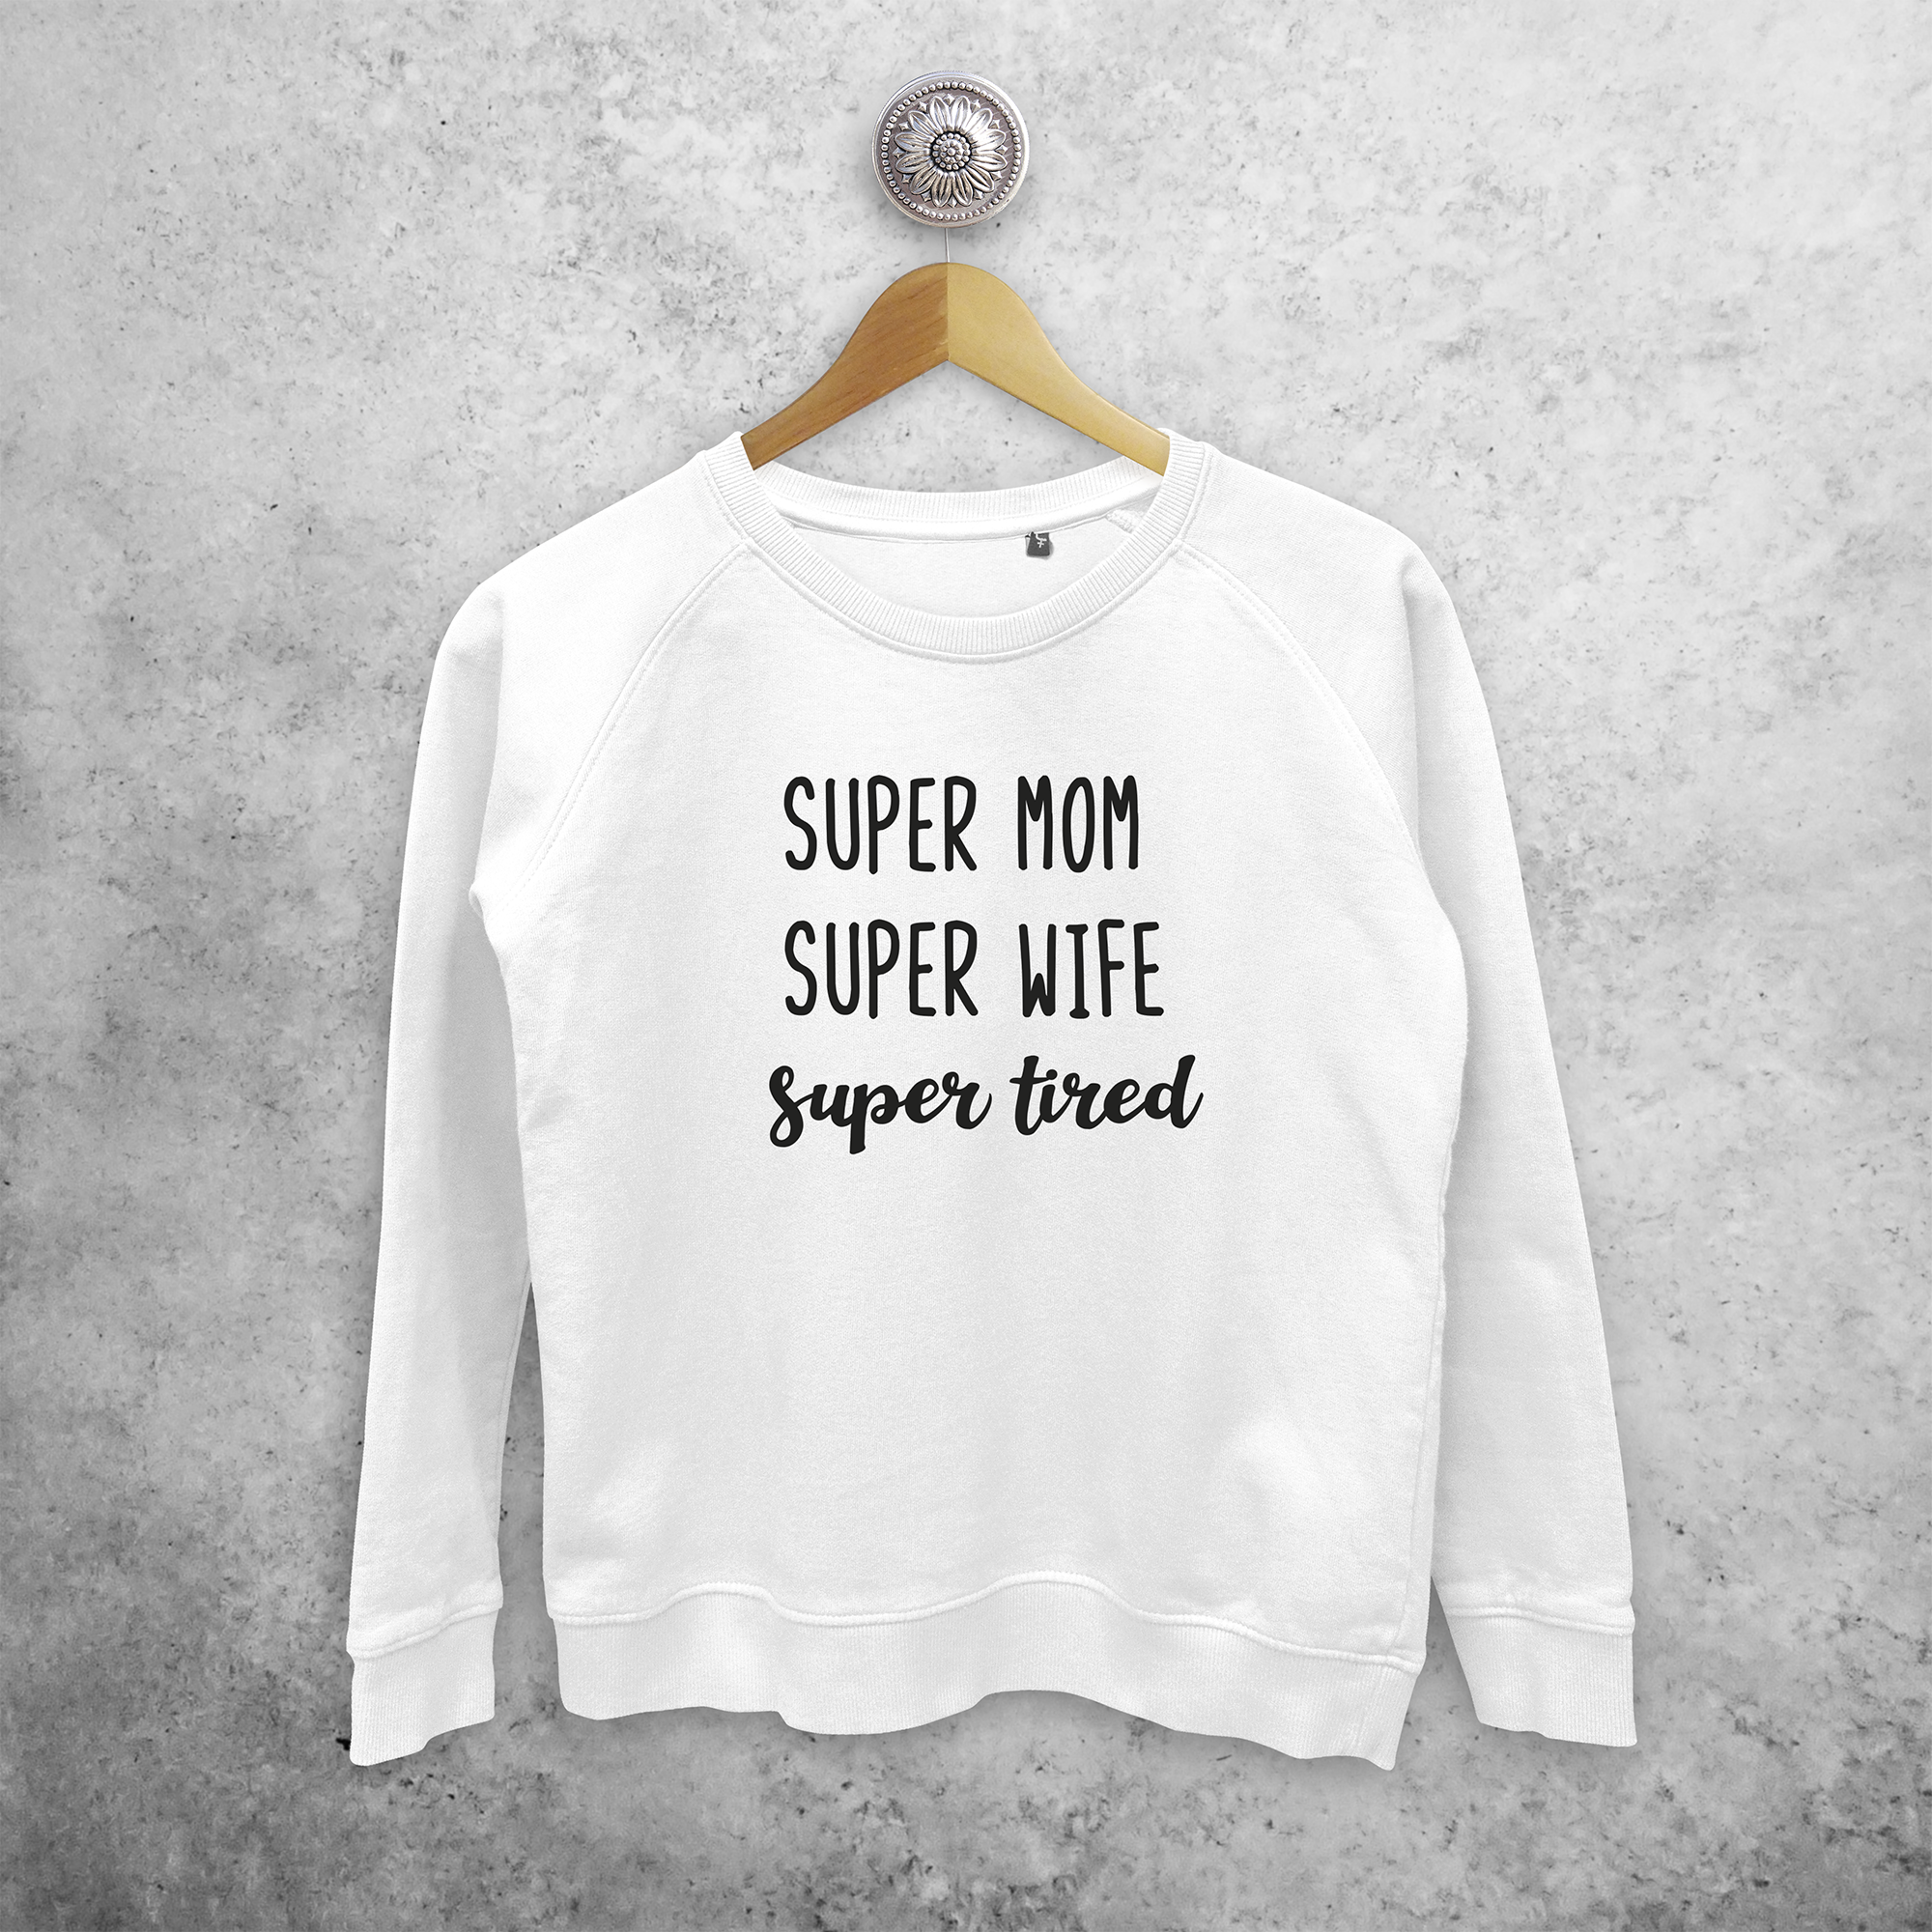 'Super mom, super wife, super tired' sweater